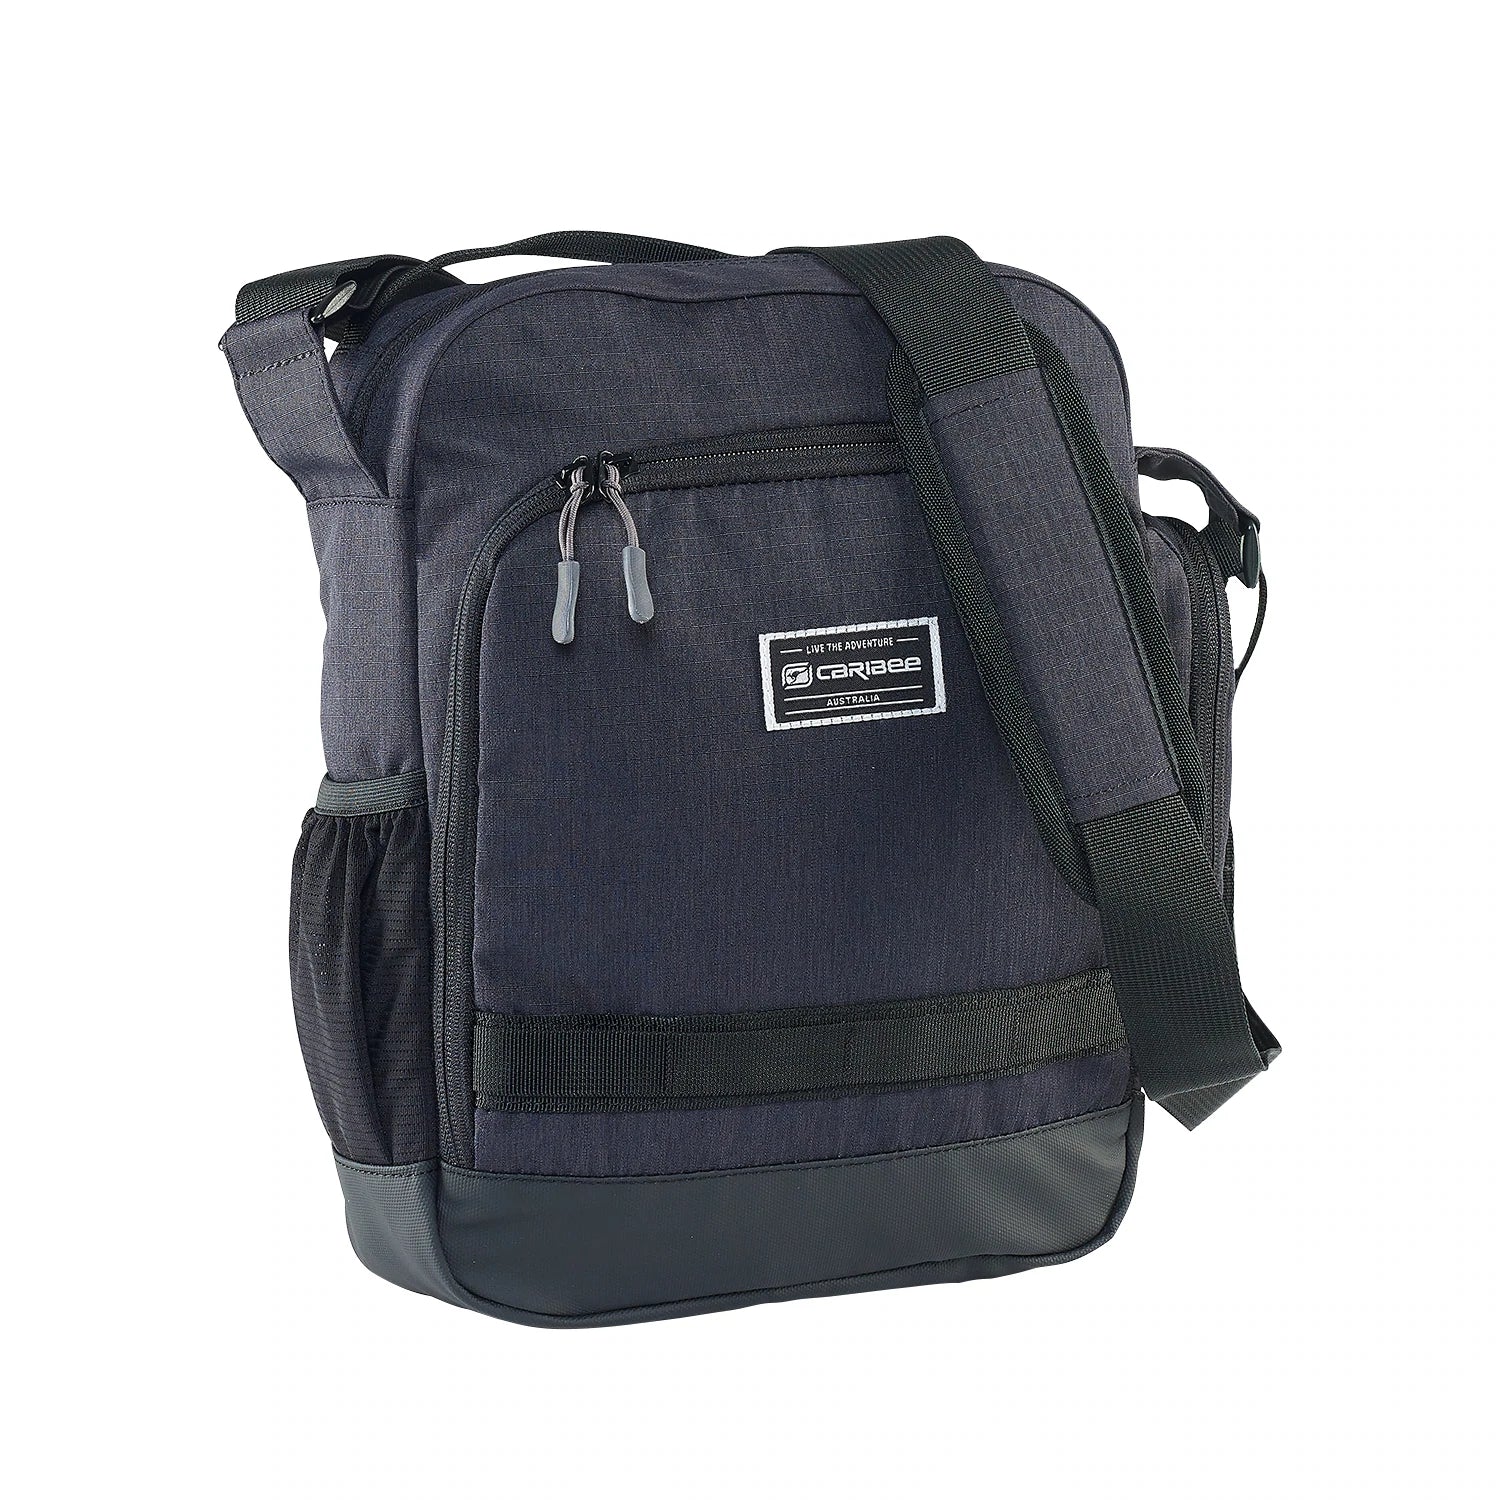 Caribee - Departure Bag 2.0 Travel Shoulder Bag